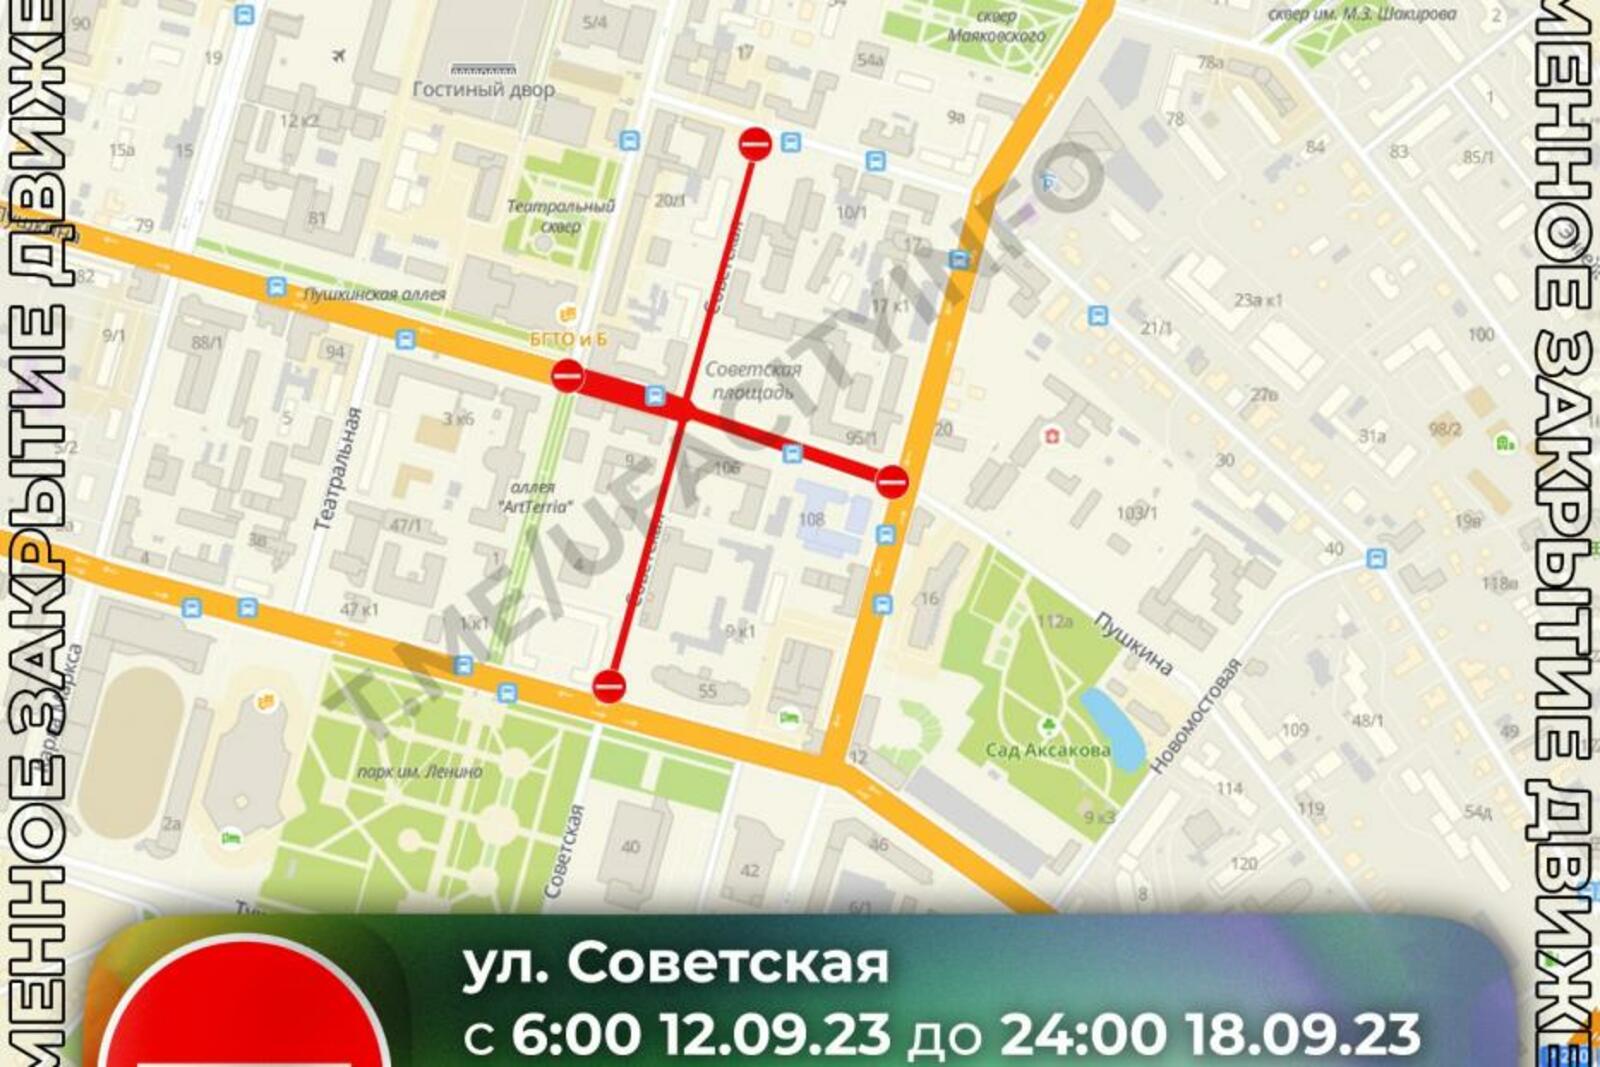 В Уфе на неделю закроют улицы в районе Советской площади